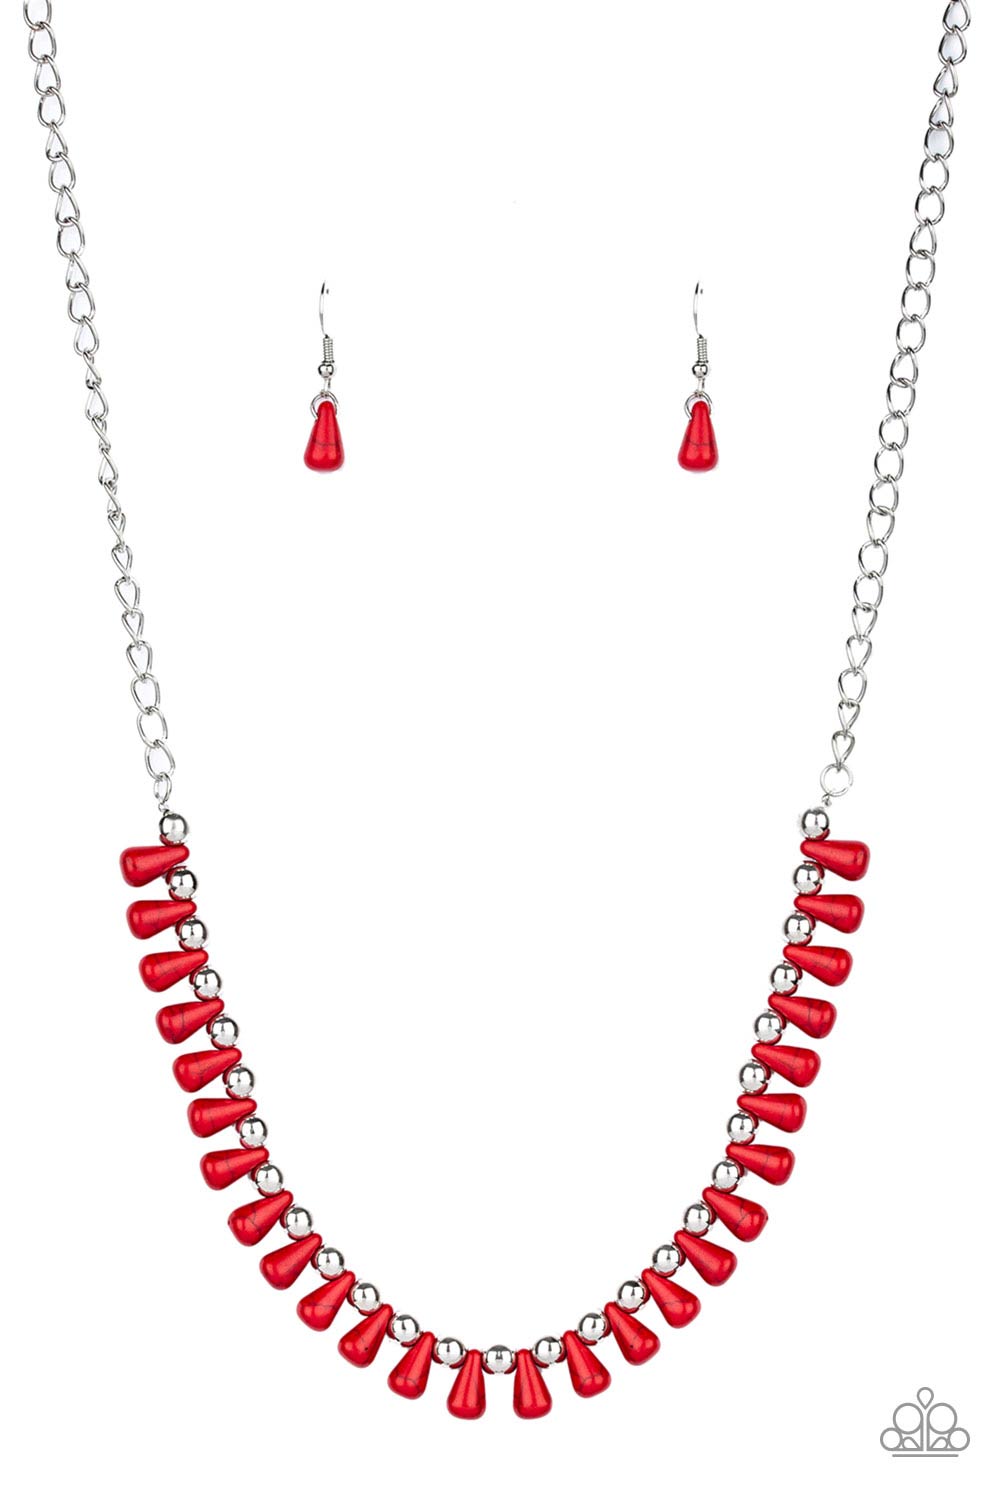 PAPARAZZI Extinct Species - Red - $5 Jewelry with Ashley Swint